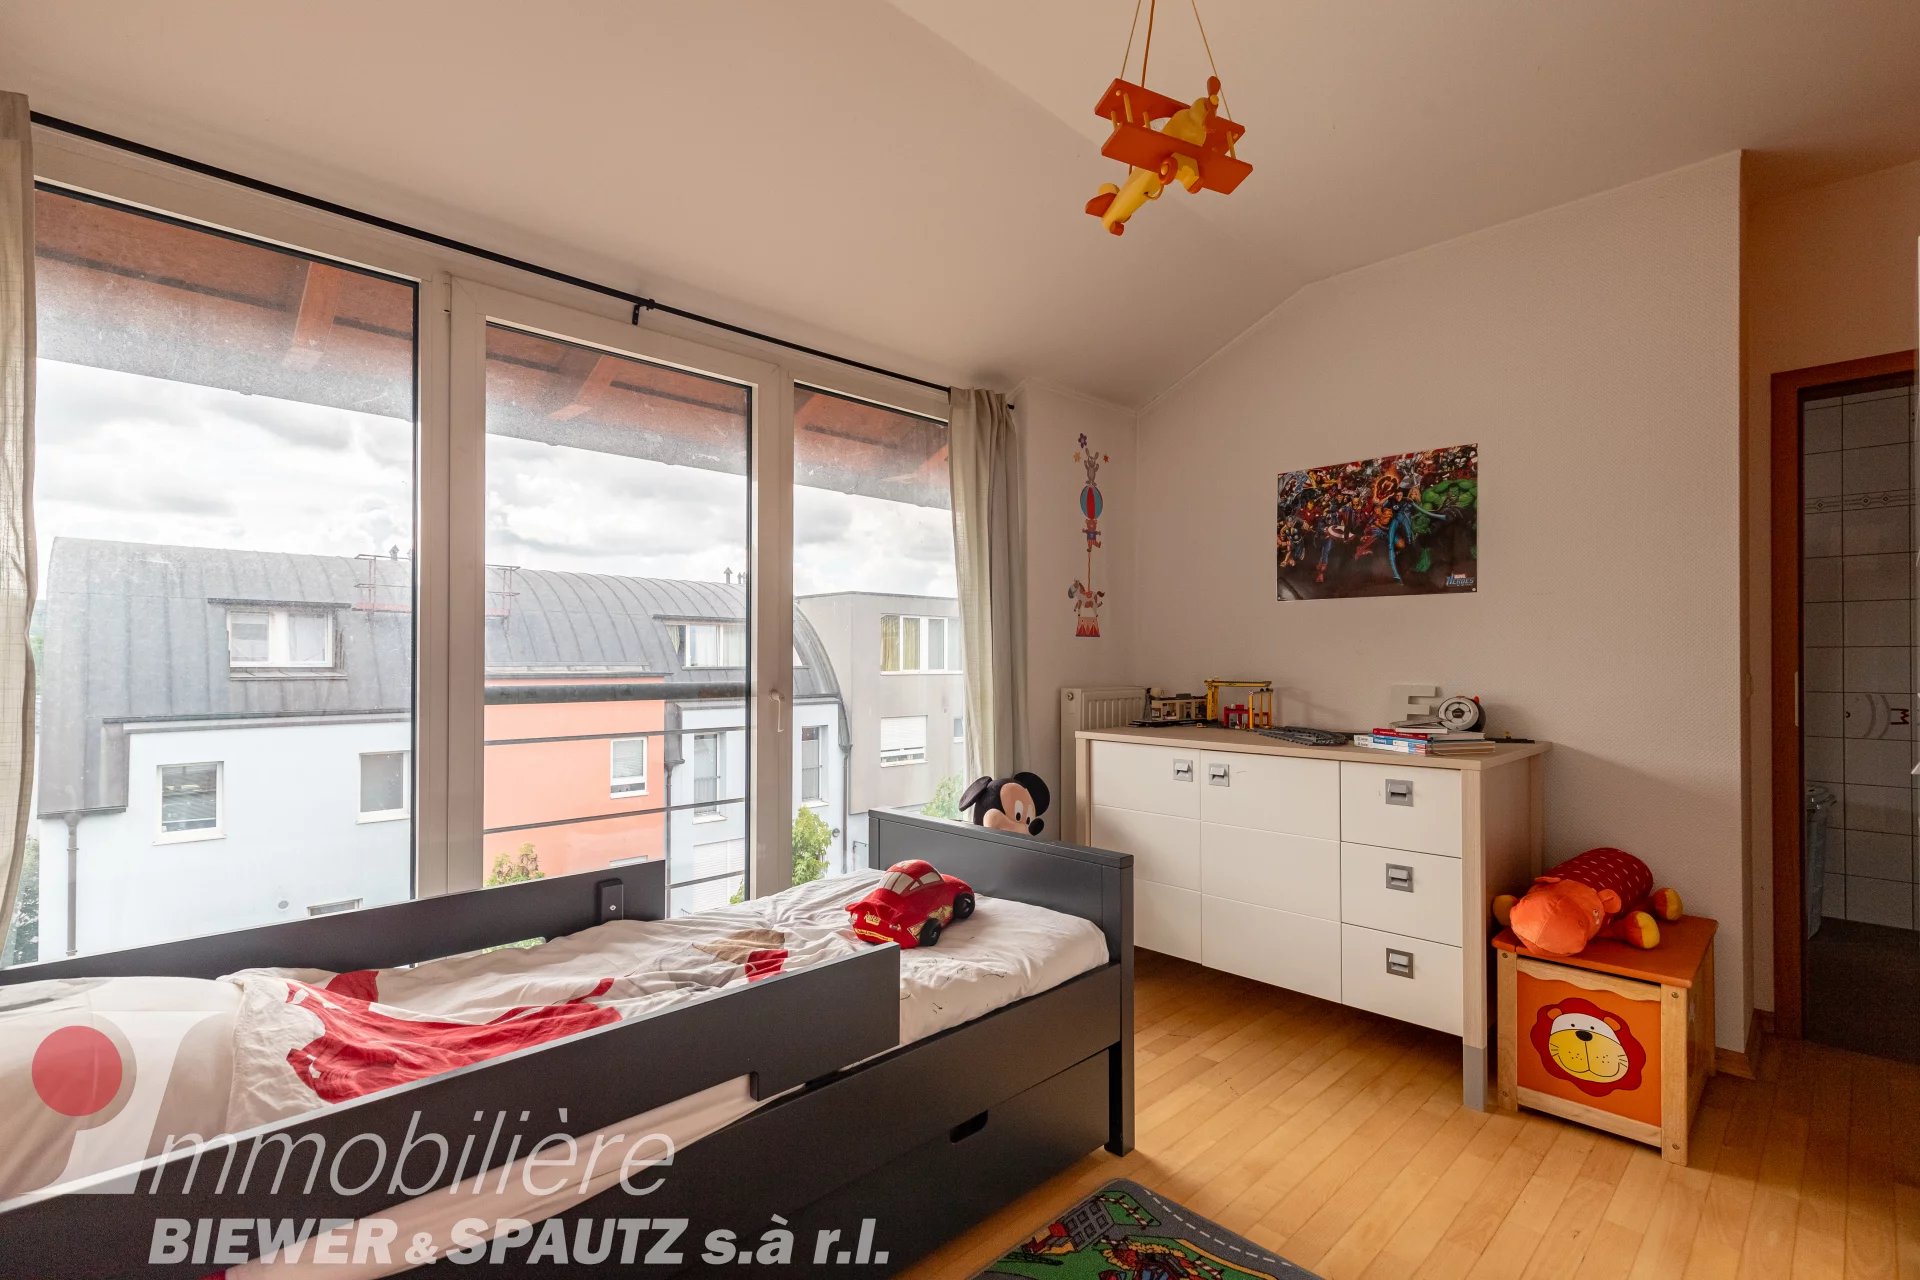 FOR SALE - 2 bedroom Duplex in Lorentzweiler